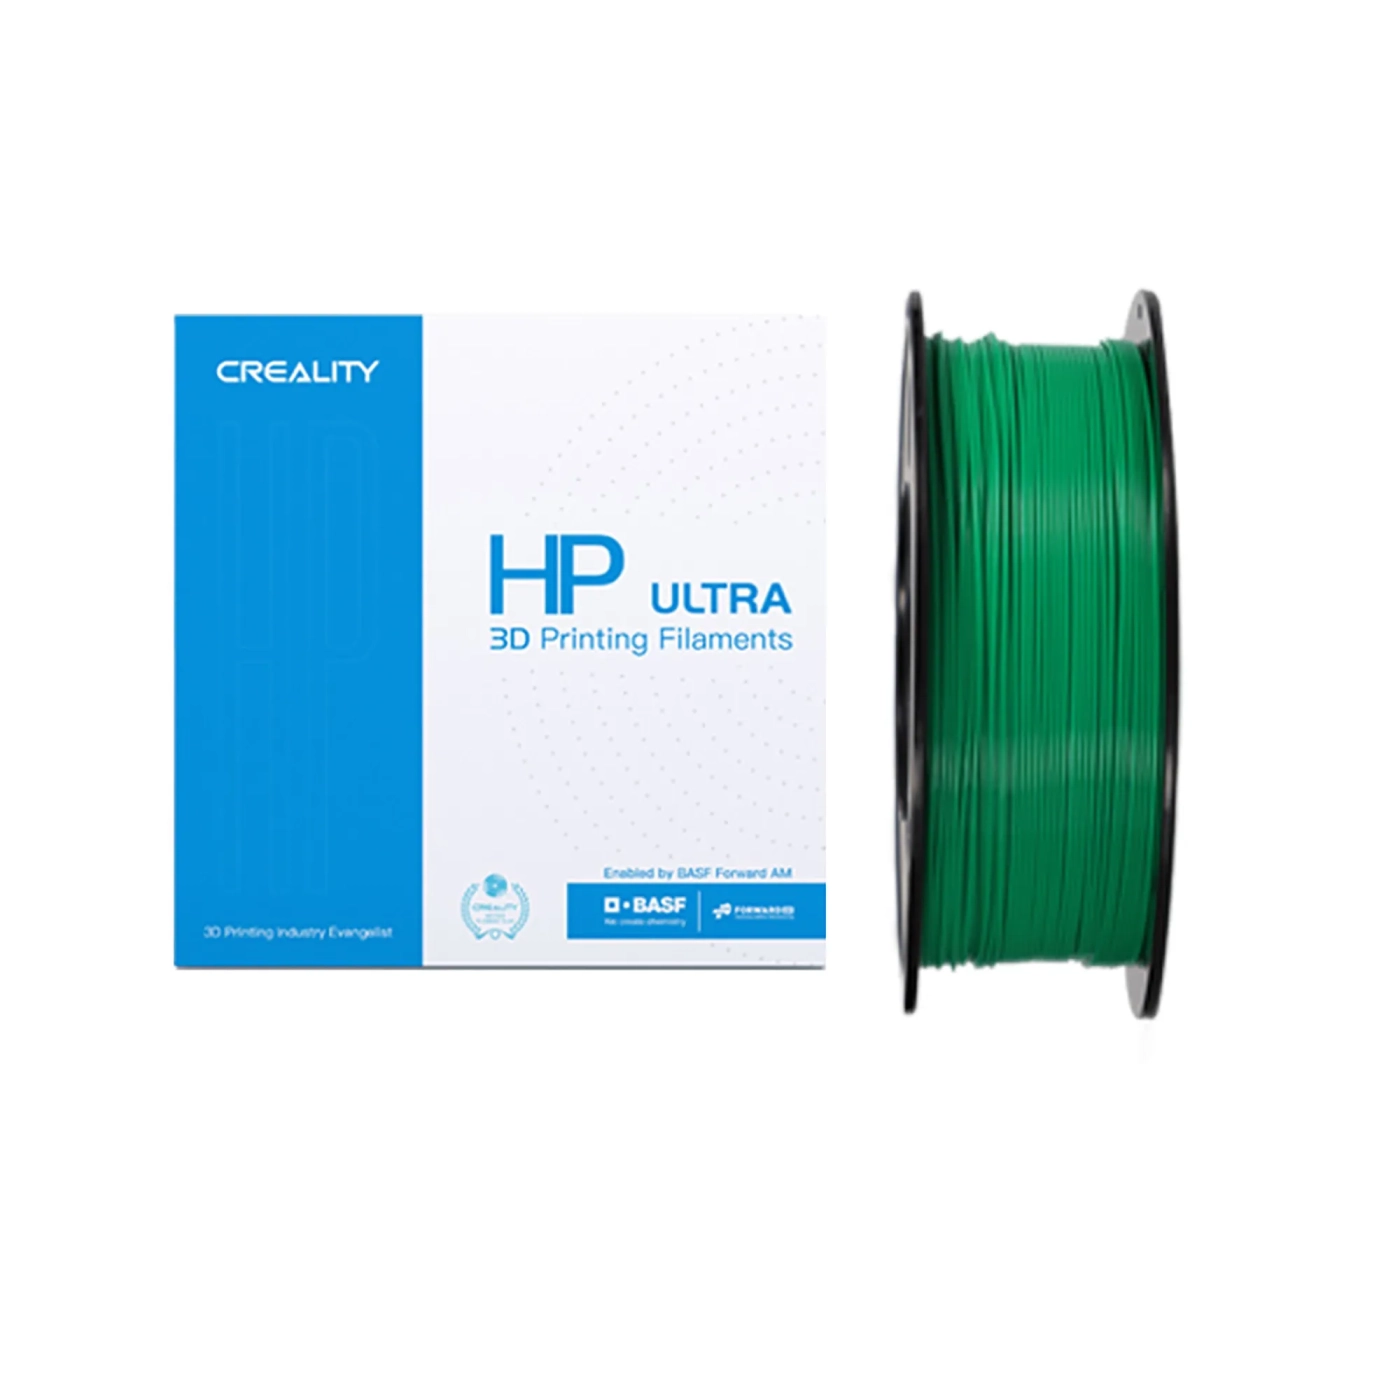 Купити HP ULTRA PLA Filament (пластик) для 3D принтера CREALITY 1кг, 1.75мм, зелений - фото 1